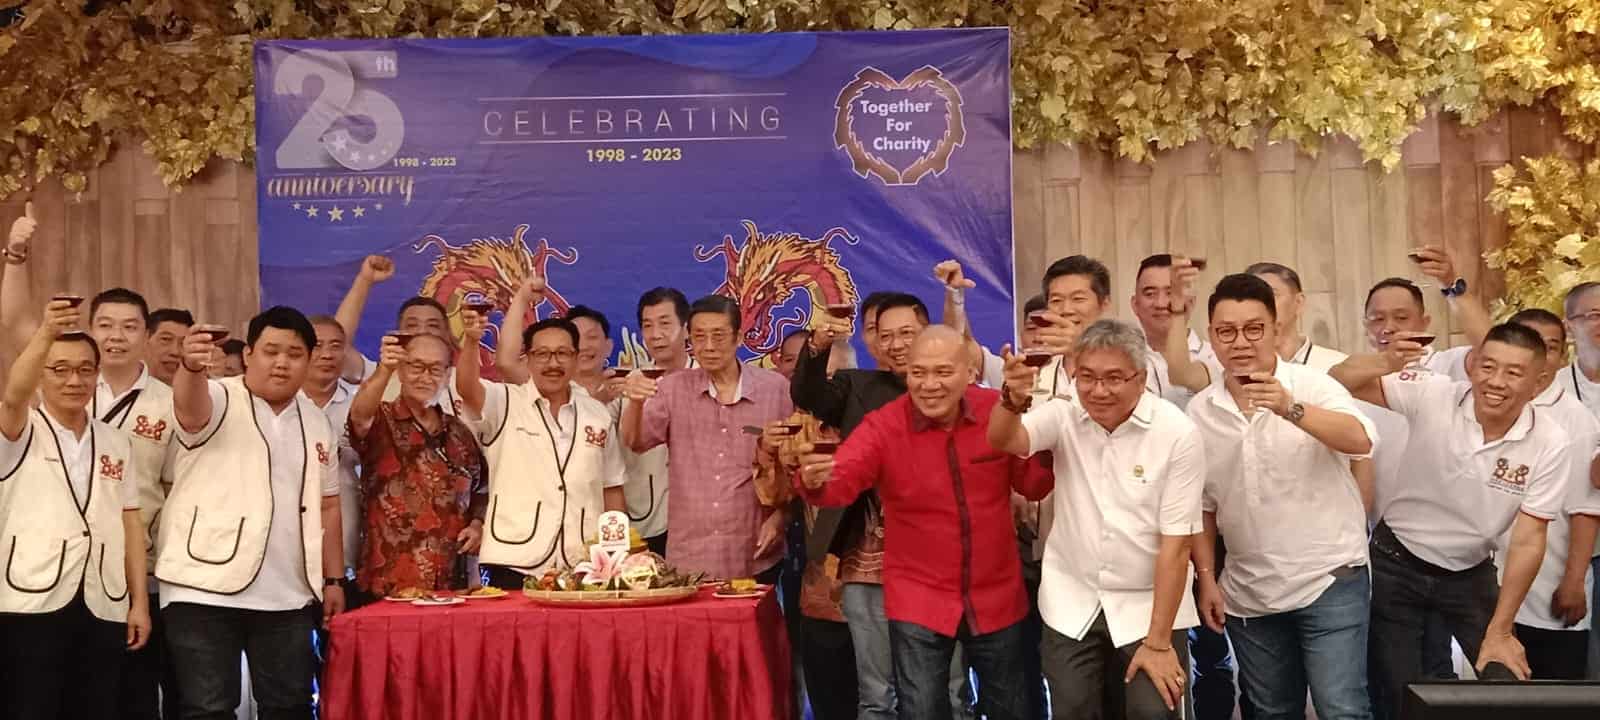 Foto : Pengurus KBCK foto bersama saat HUT KBCK Ke-25 Tahun yang berlangsung di Restoran Royal Thamrin di Jalan MH Thamrin, Sabtu (23/09/23) malam. (pelitaharian.id/aris),